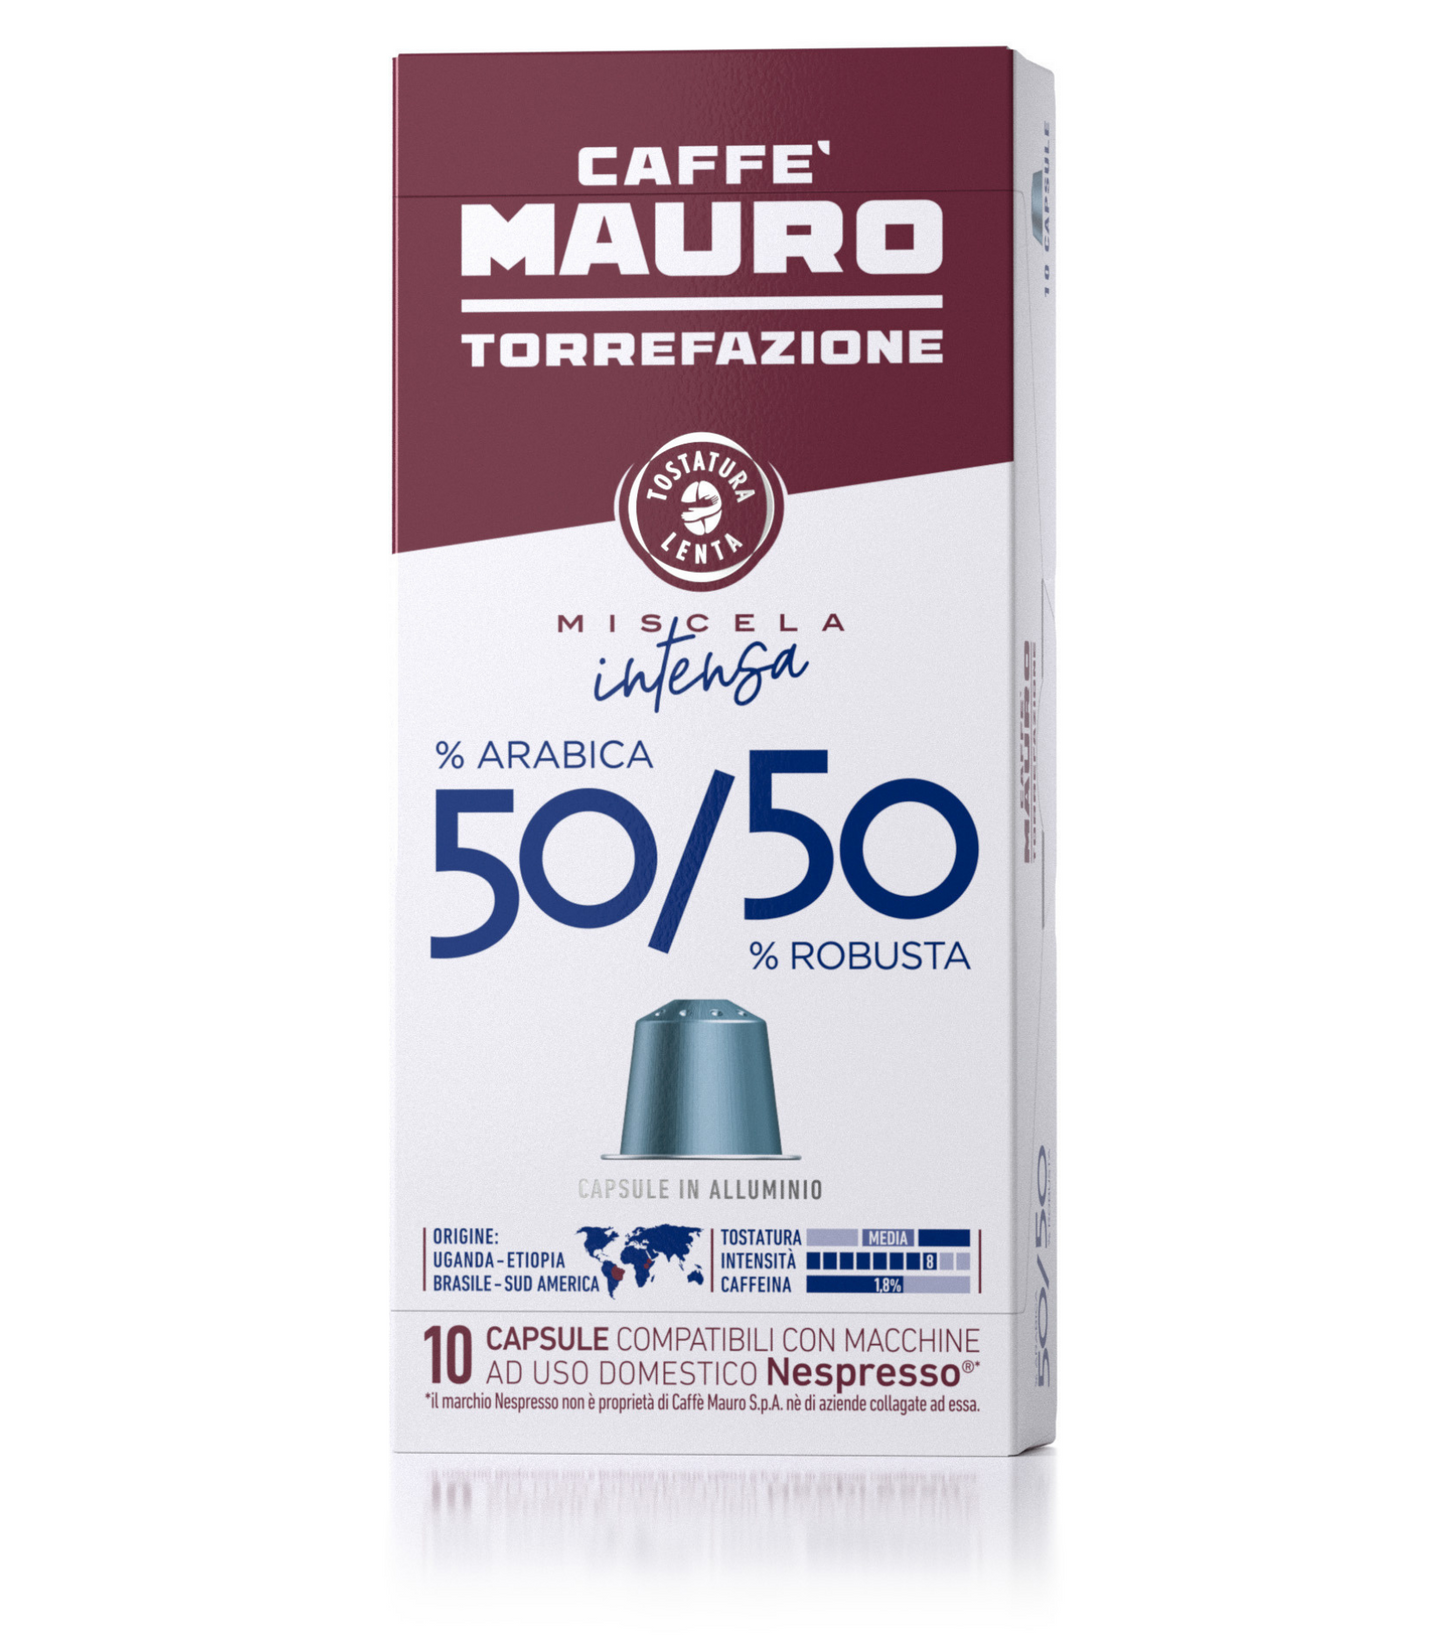 CAFFE' MAURO COMPATIBILI NESPRESSO* 50% ARABICA - 50% ROBUSTA 10 CAPSULE 55g